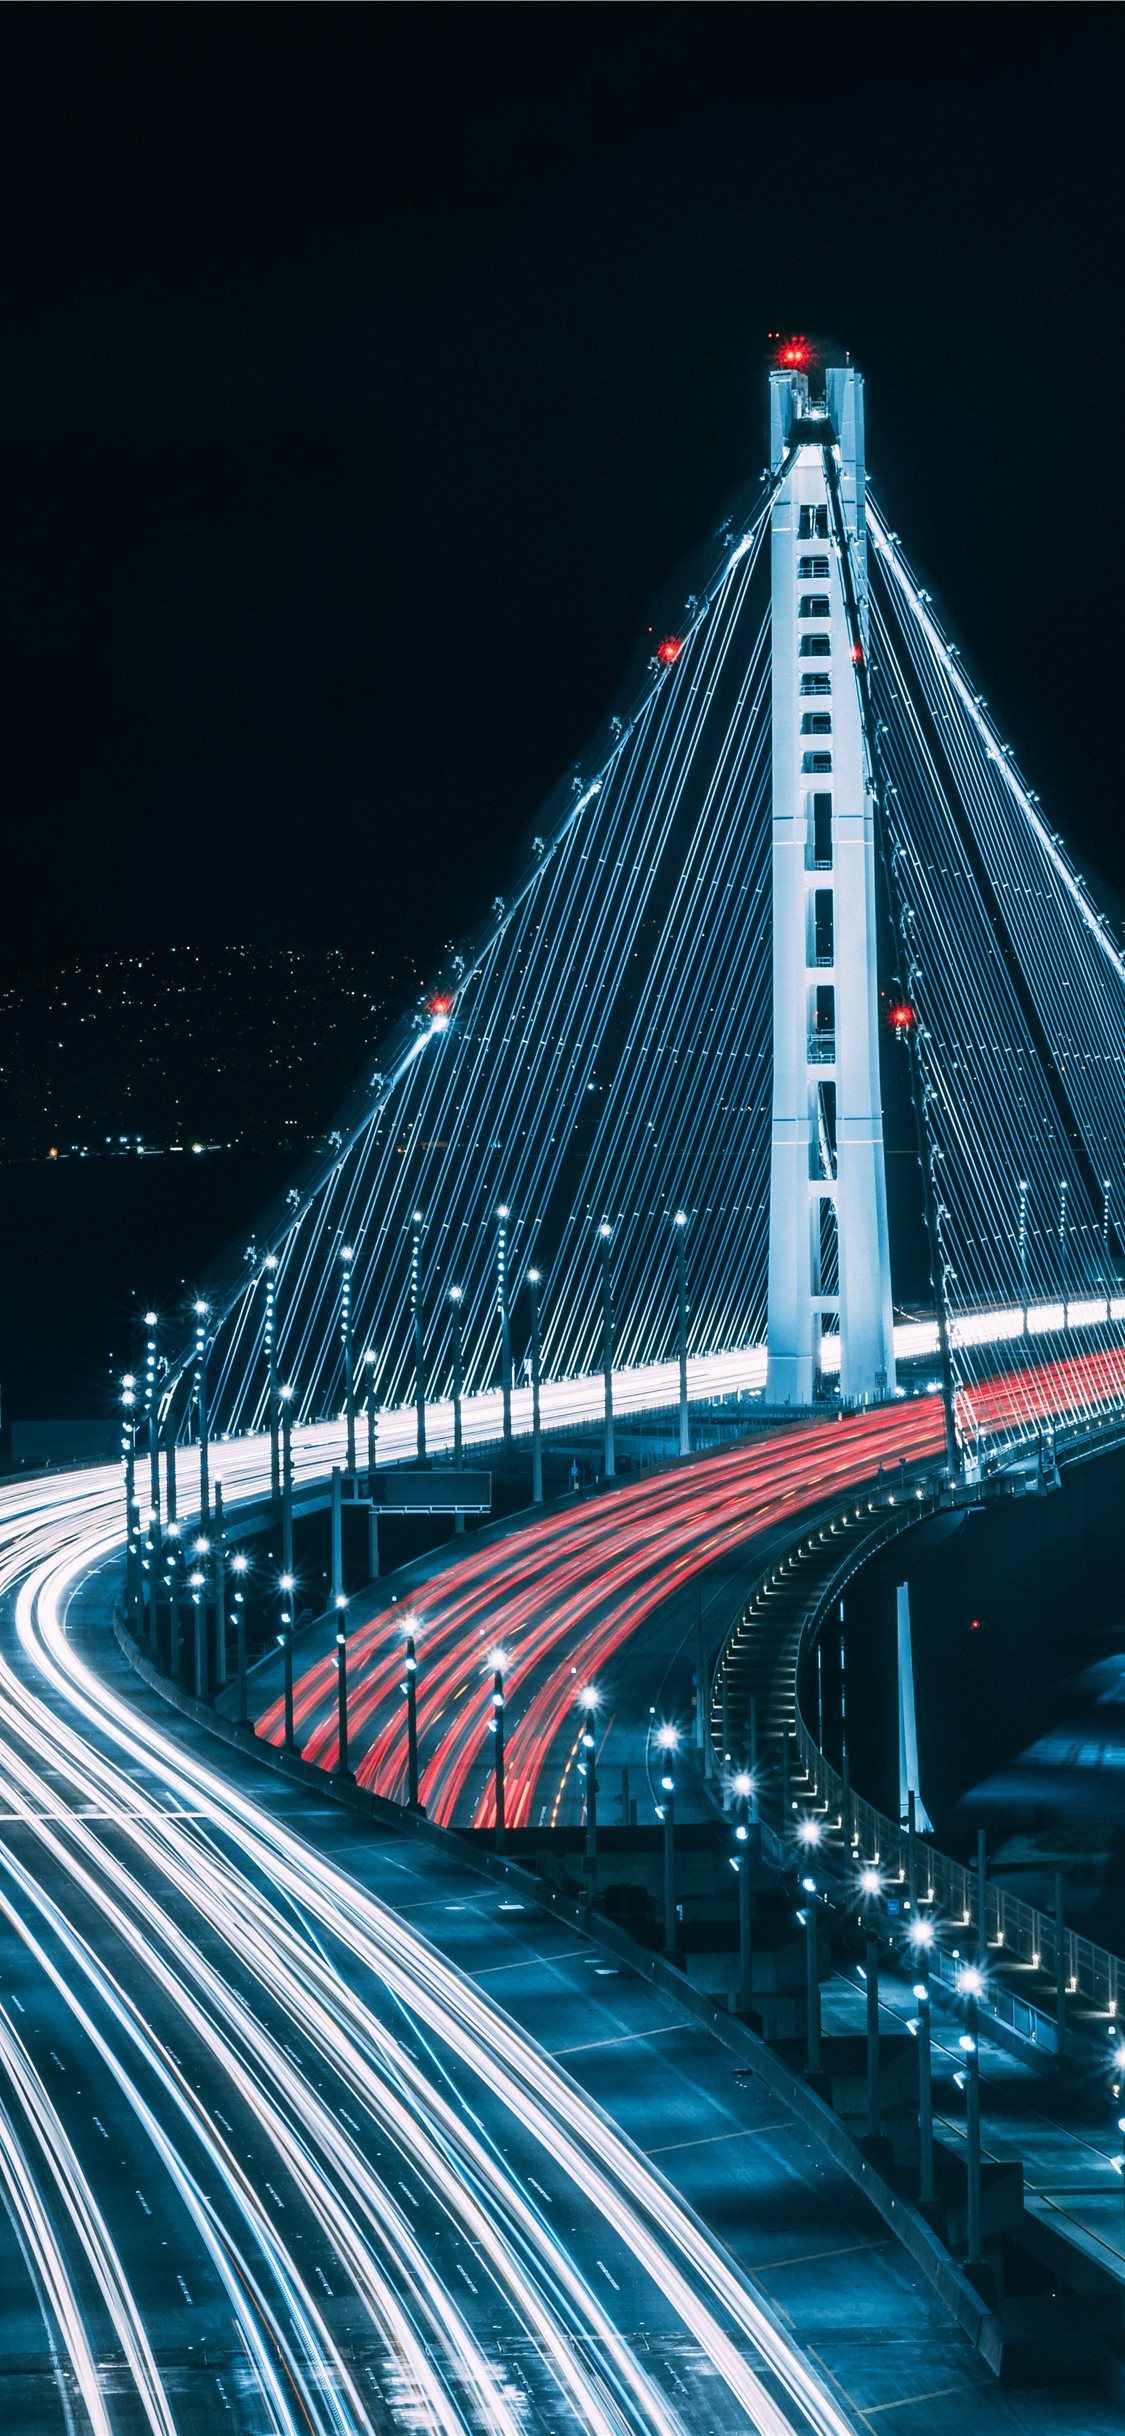 San Francisco Bridge During Night Time iPhone Wallpaper